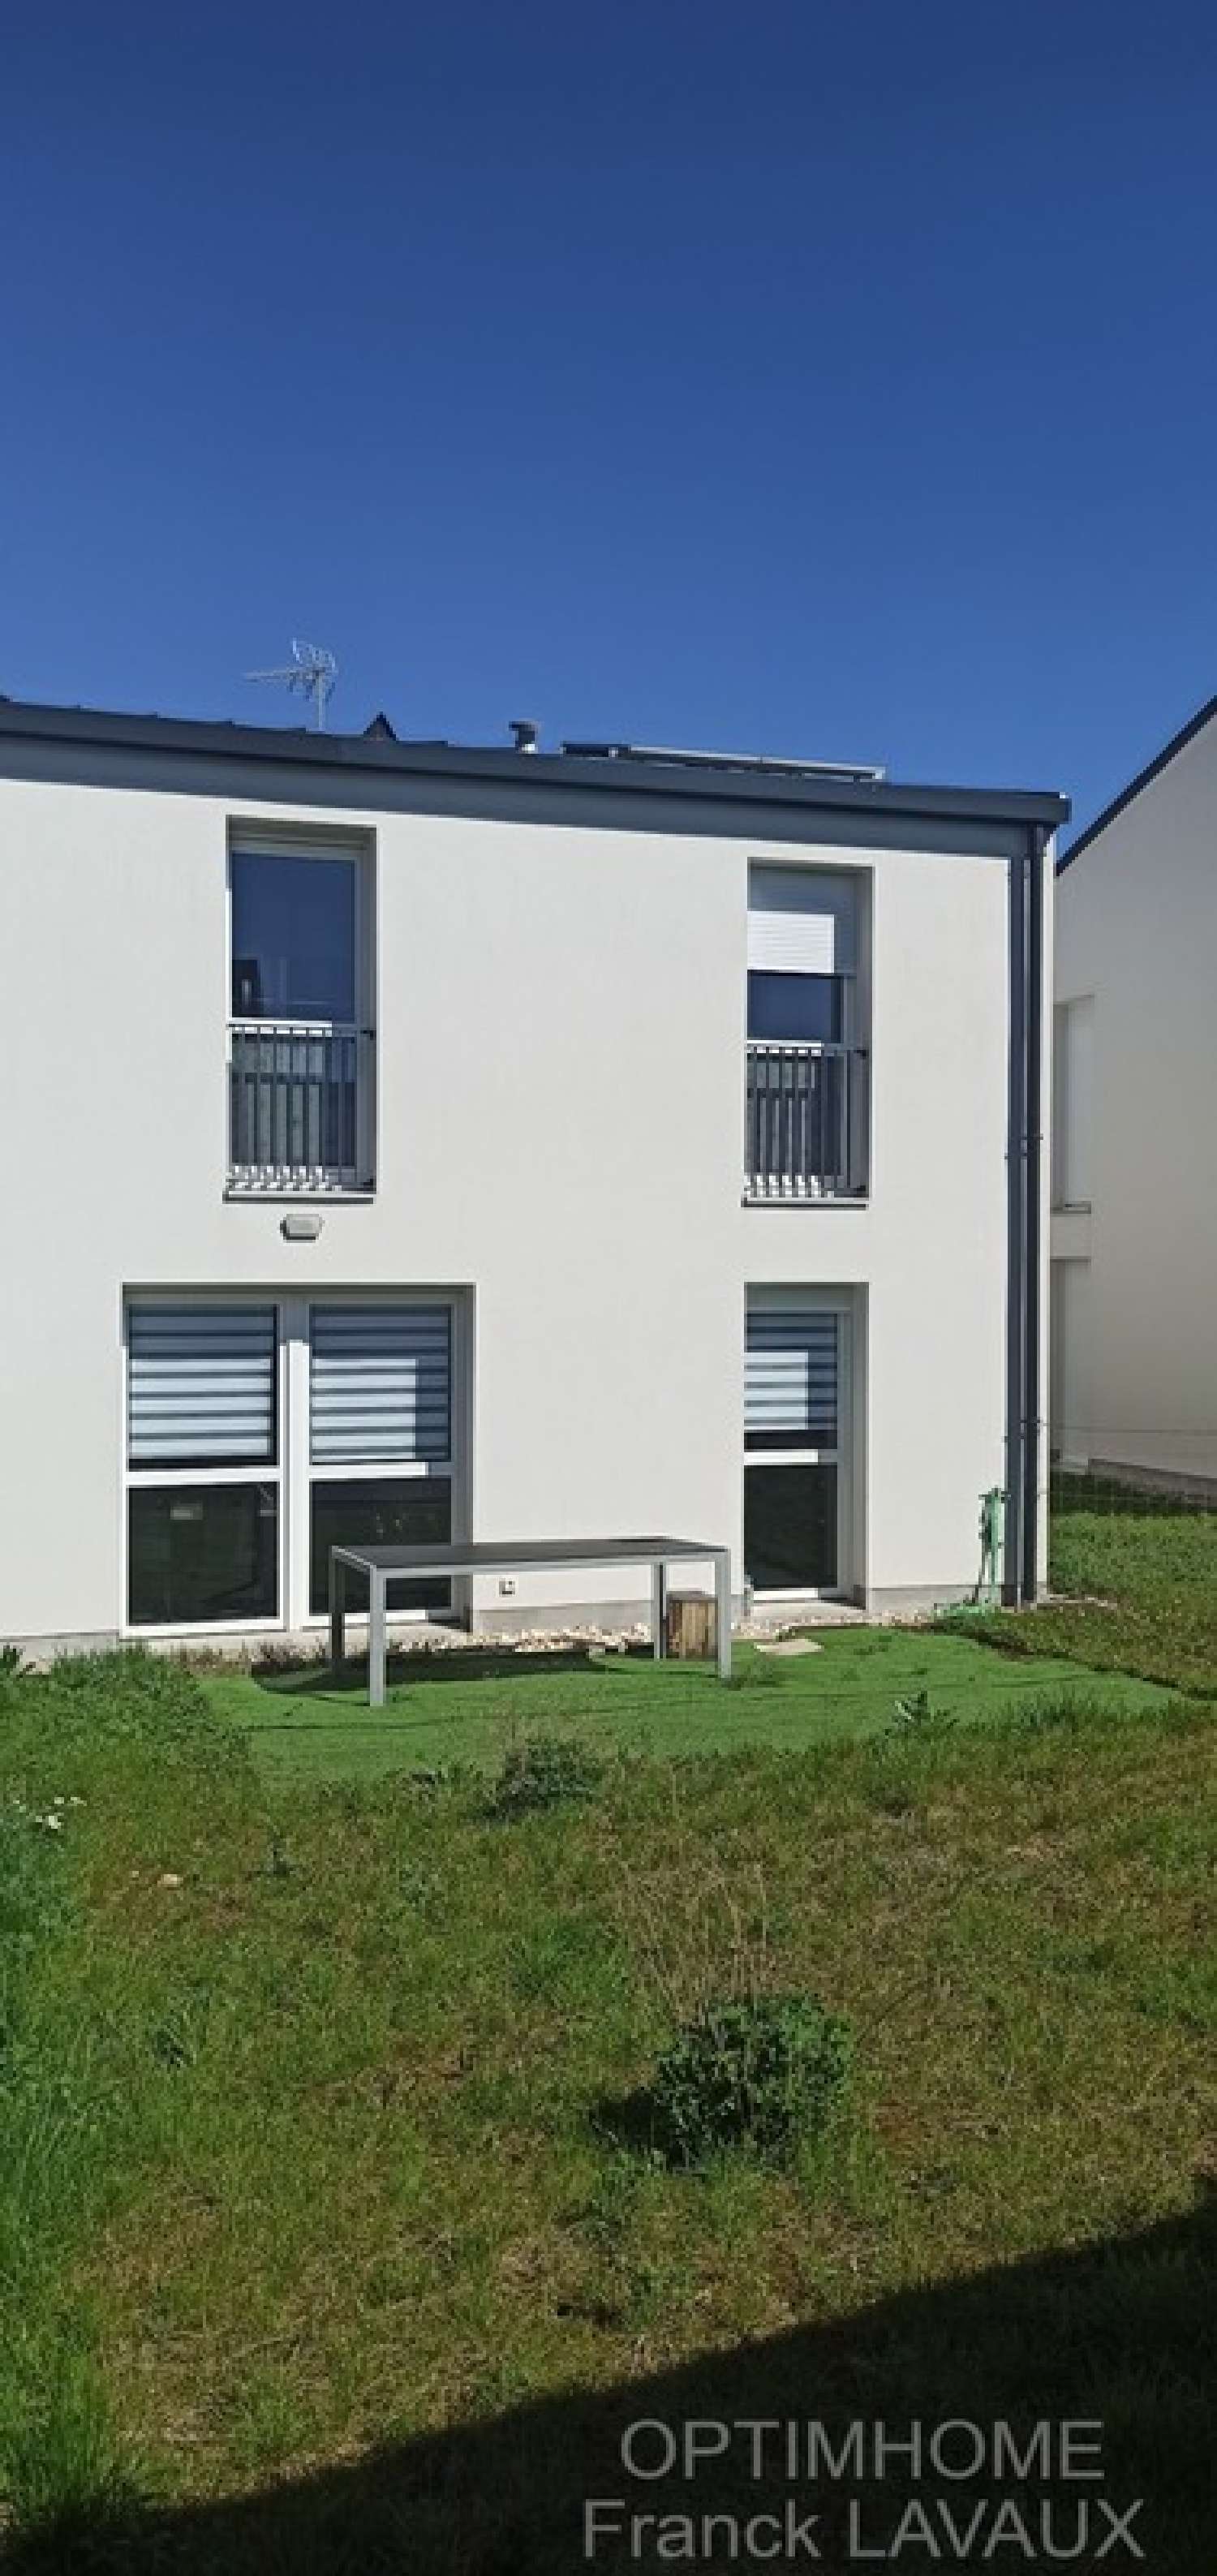  à vendre maison Vandoeuvre-lès-Nancy Meurthe-et-Moselle 4